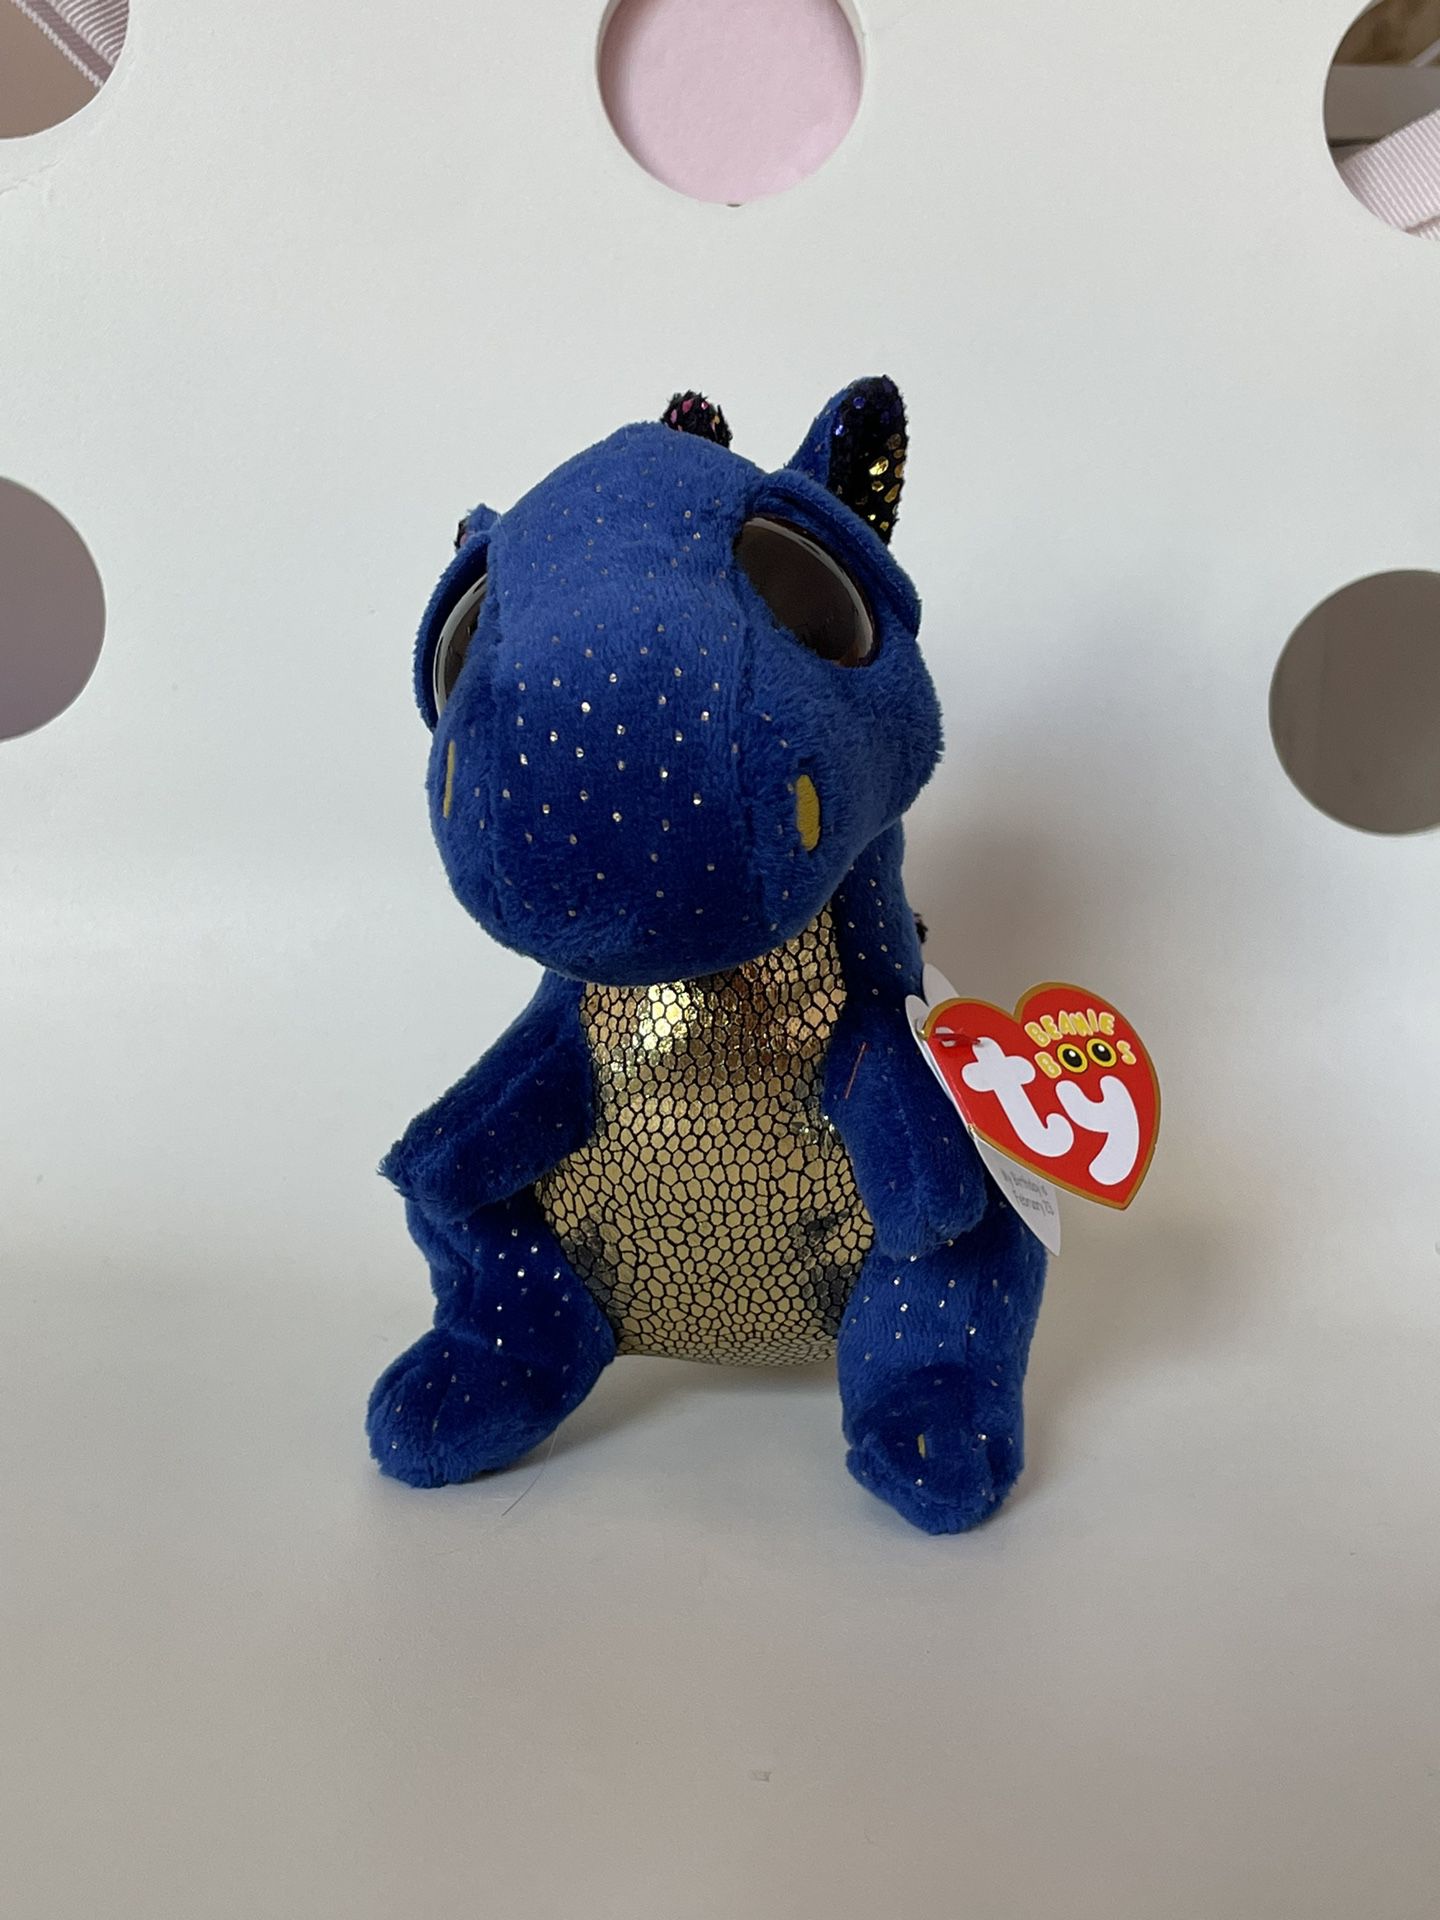 Beanie Boo TY - Blue Saffire Dragon Plushie